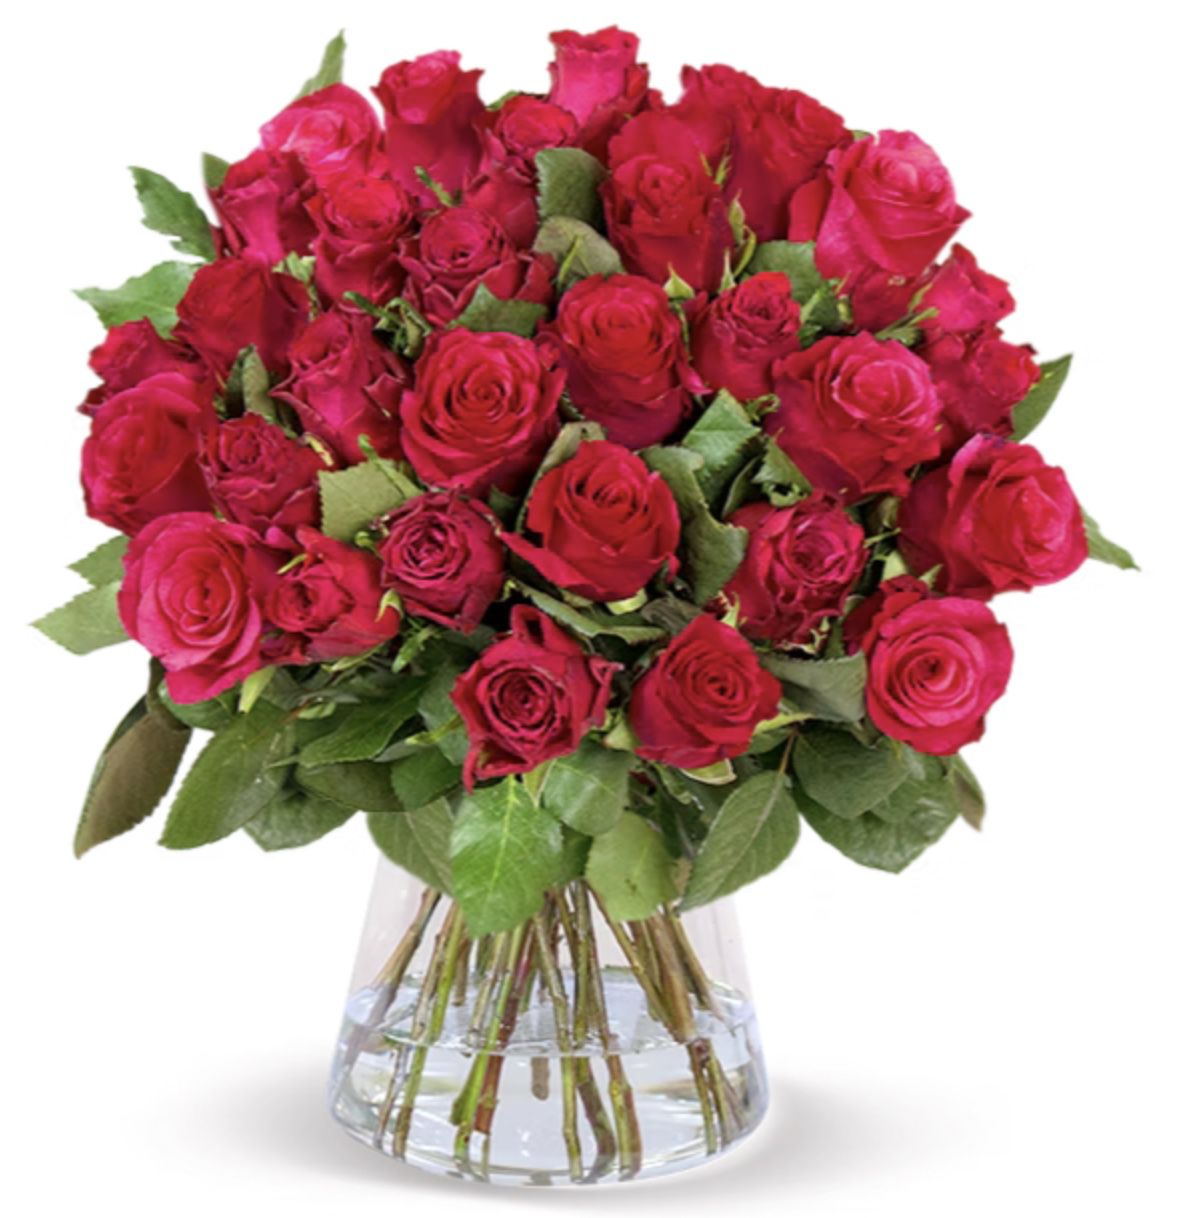 50 Rote Rosen bis 50cm Länge nur 29,98€